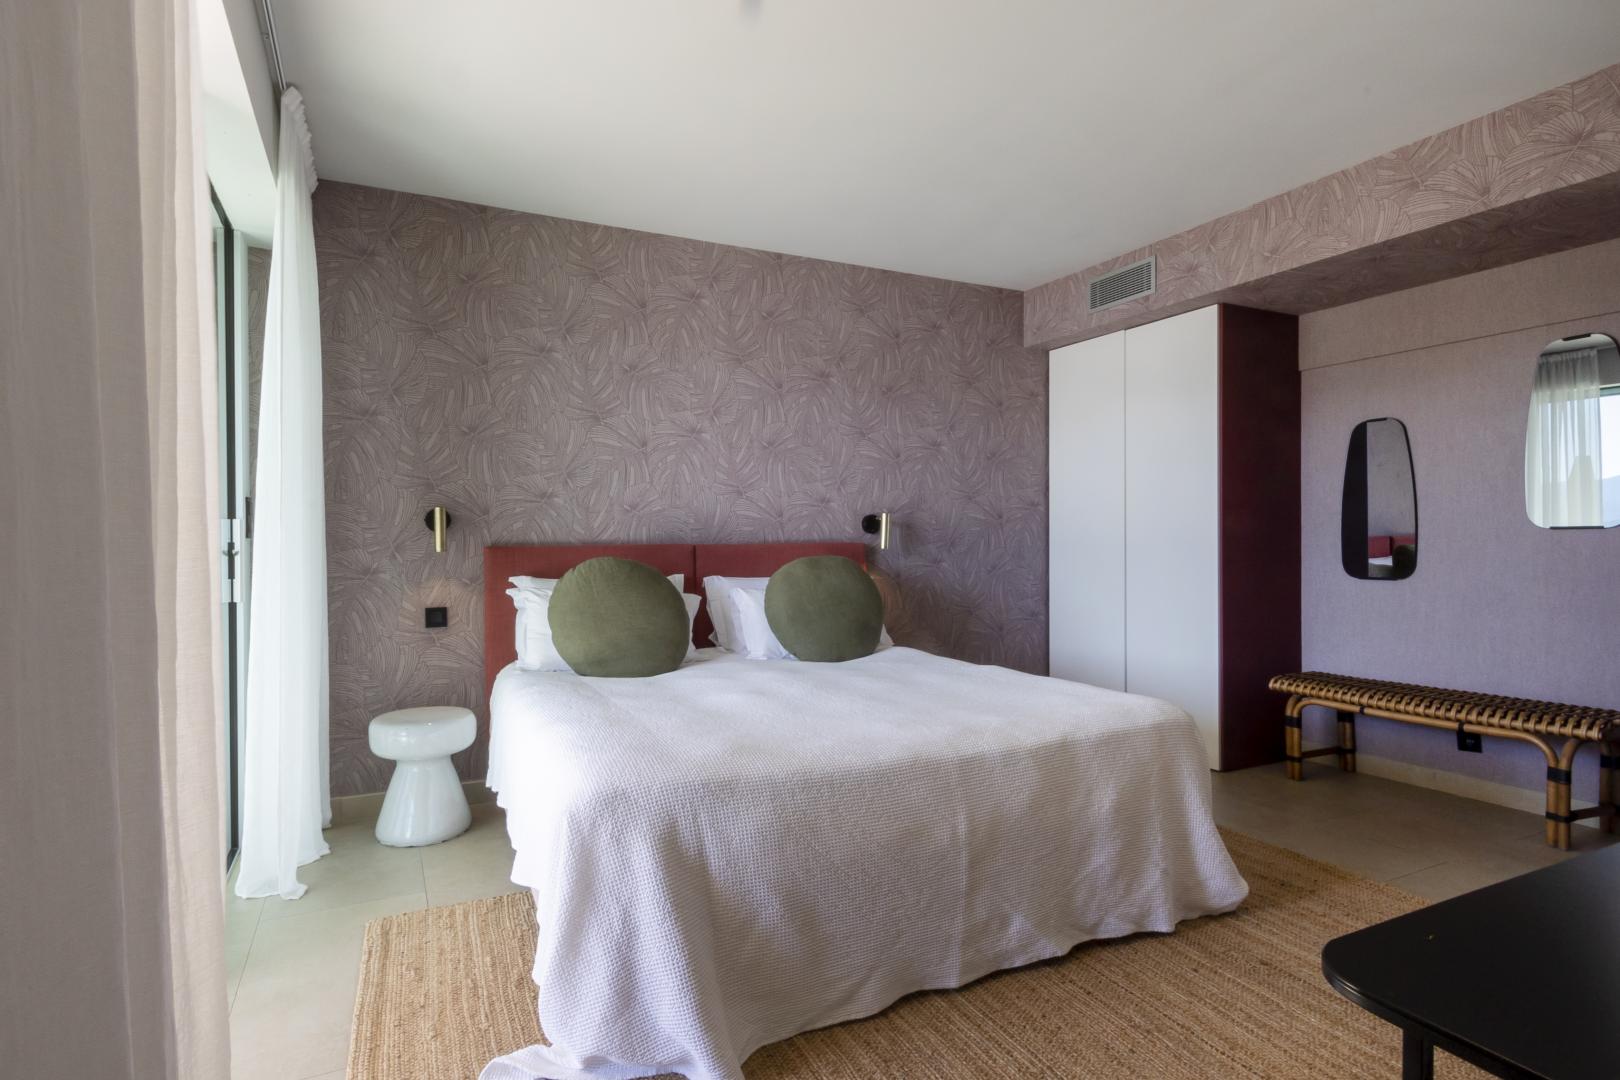 Réserver une chambre d'hôtes de luxe en Corse | Domaine Cipiniello